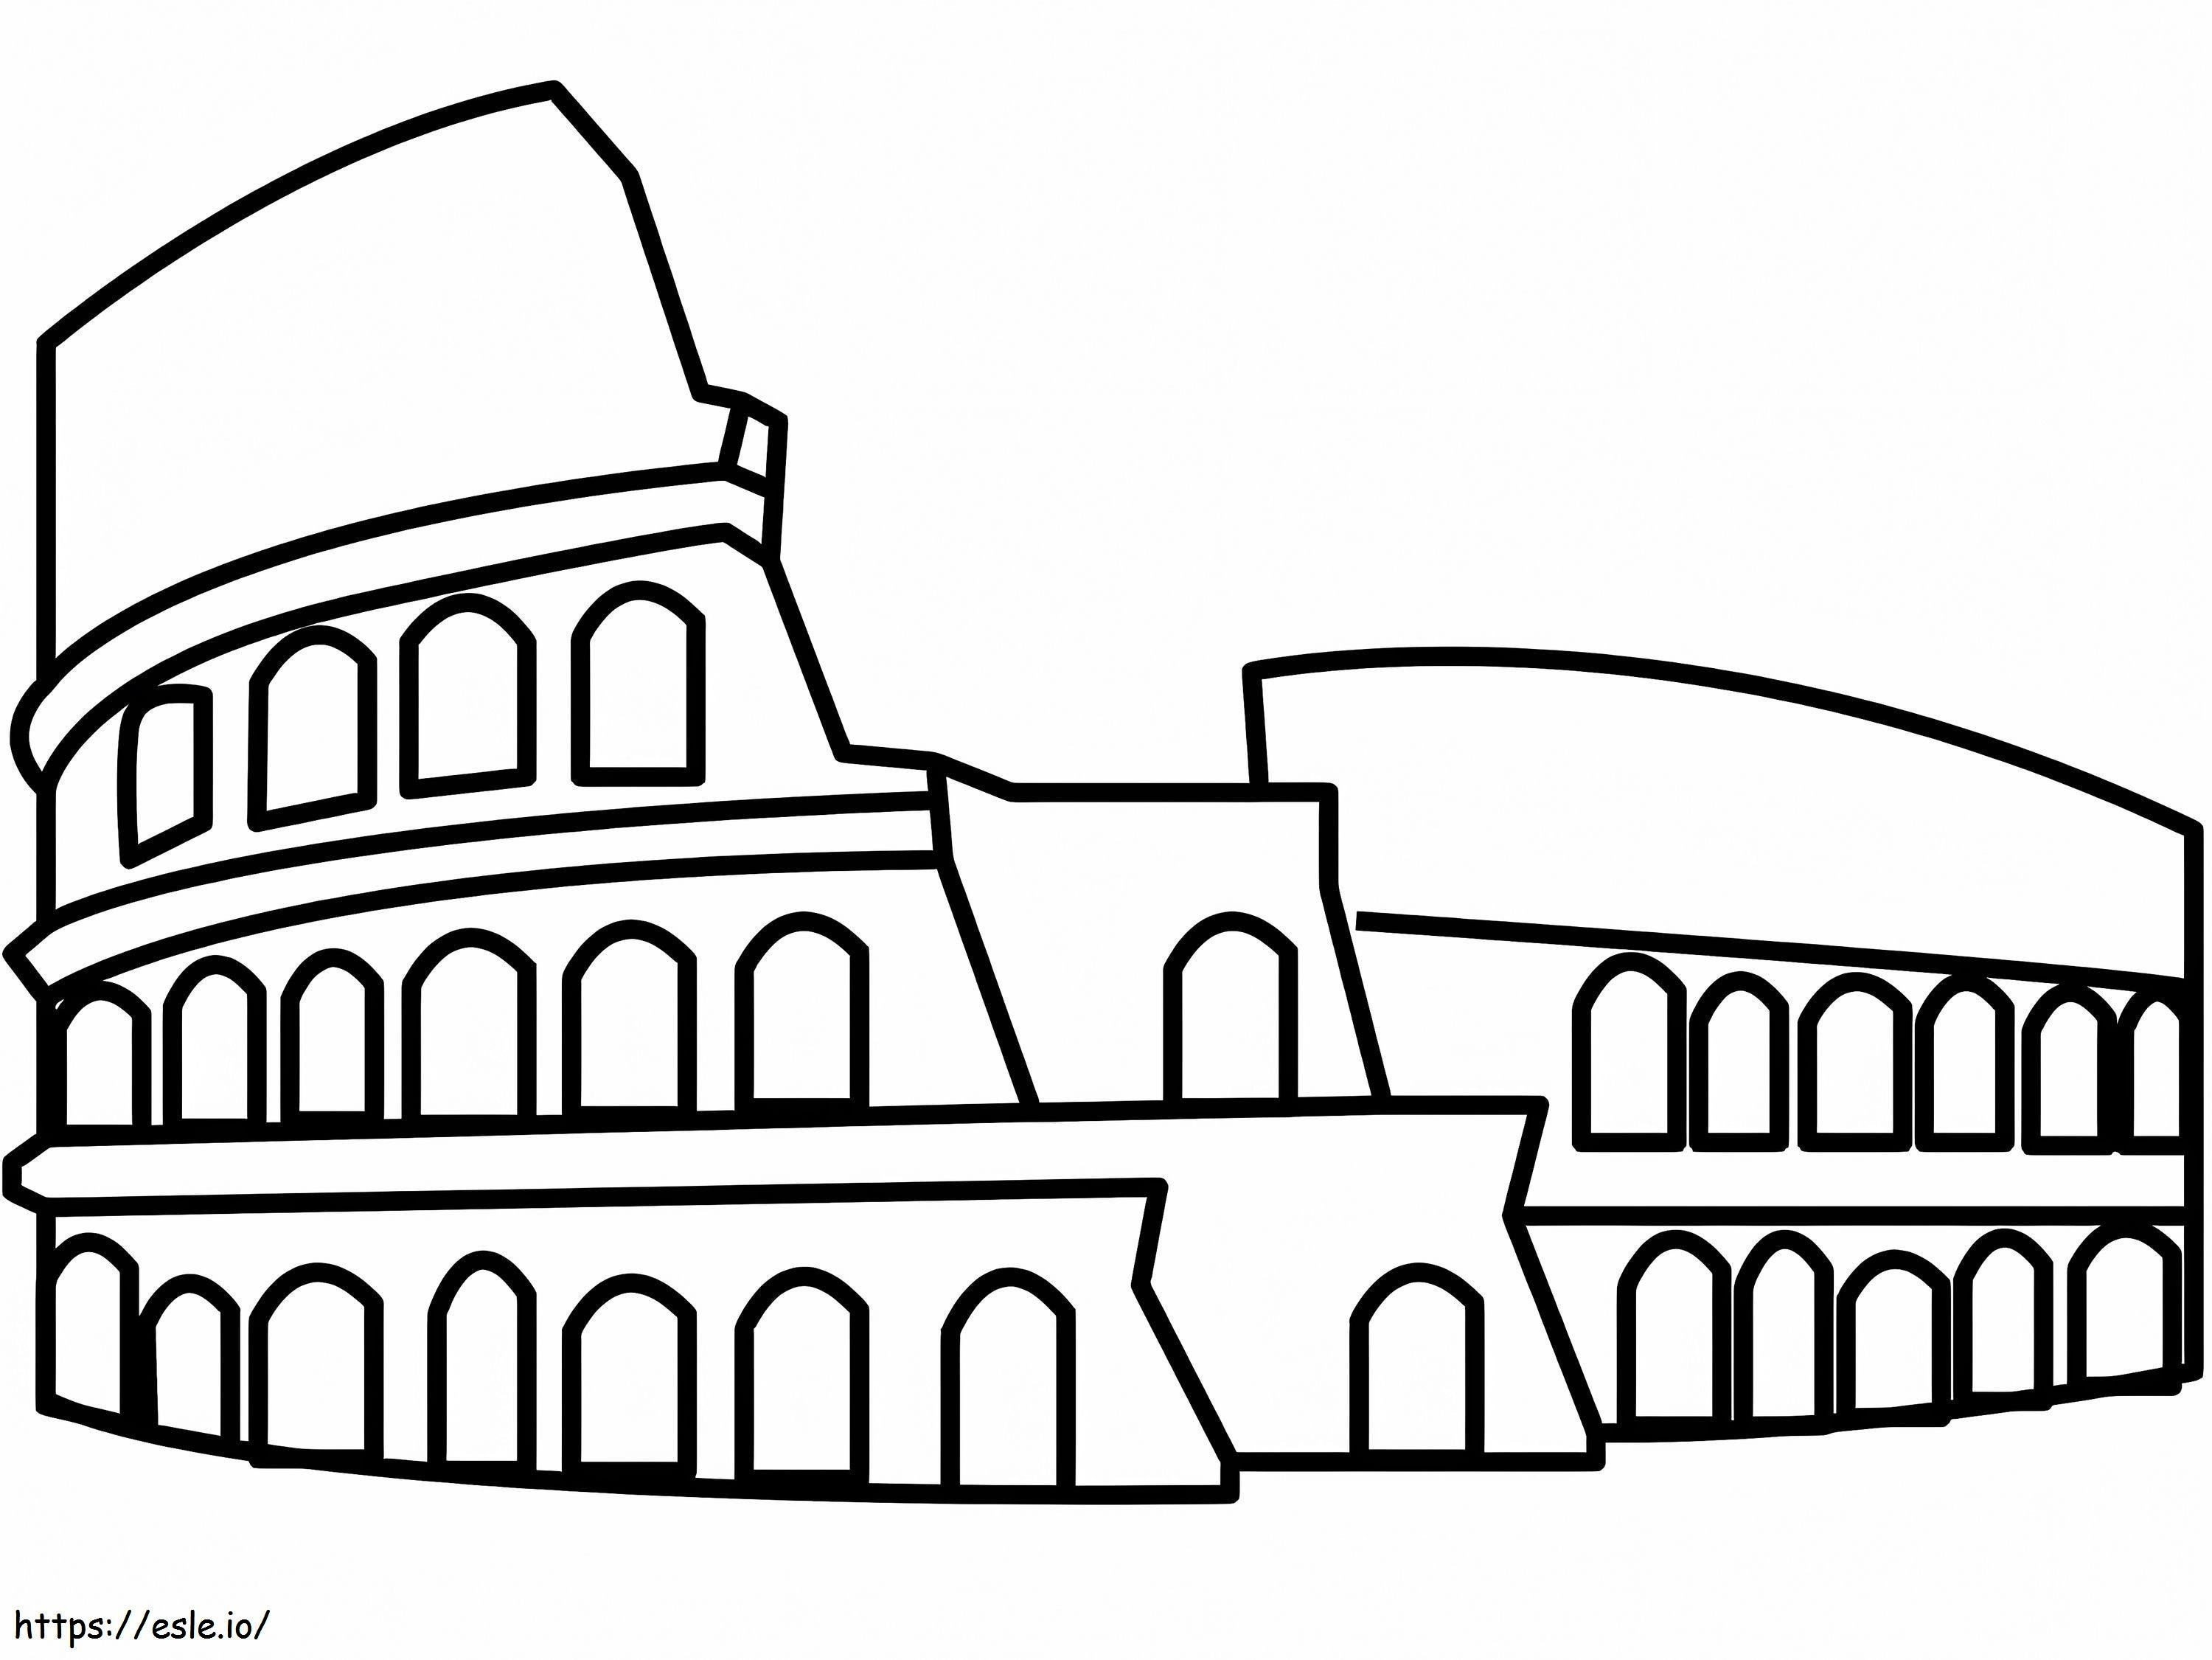 Colosseum de colorat